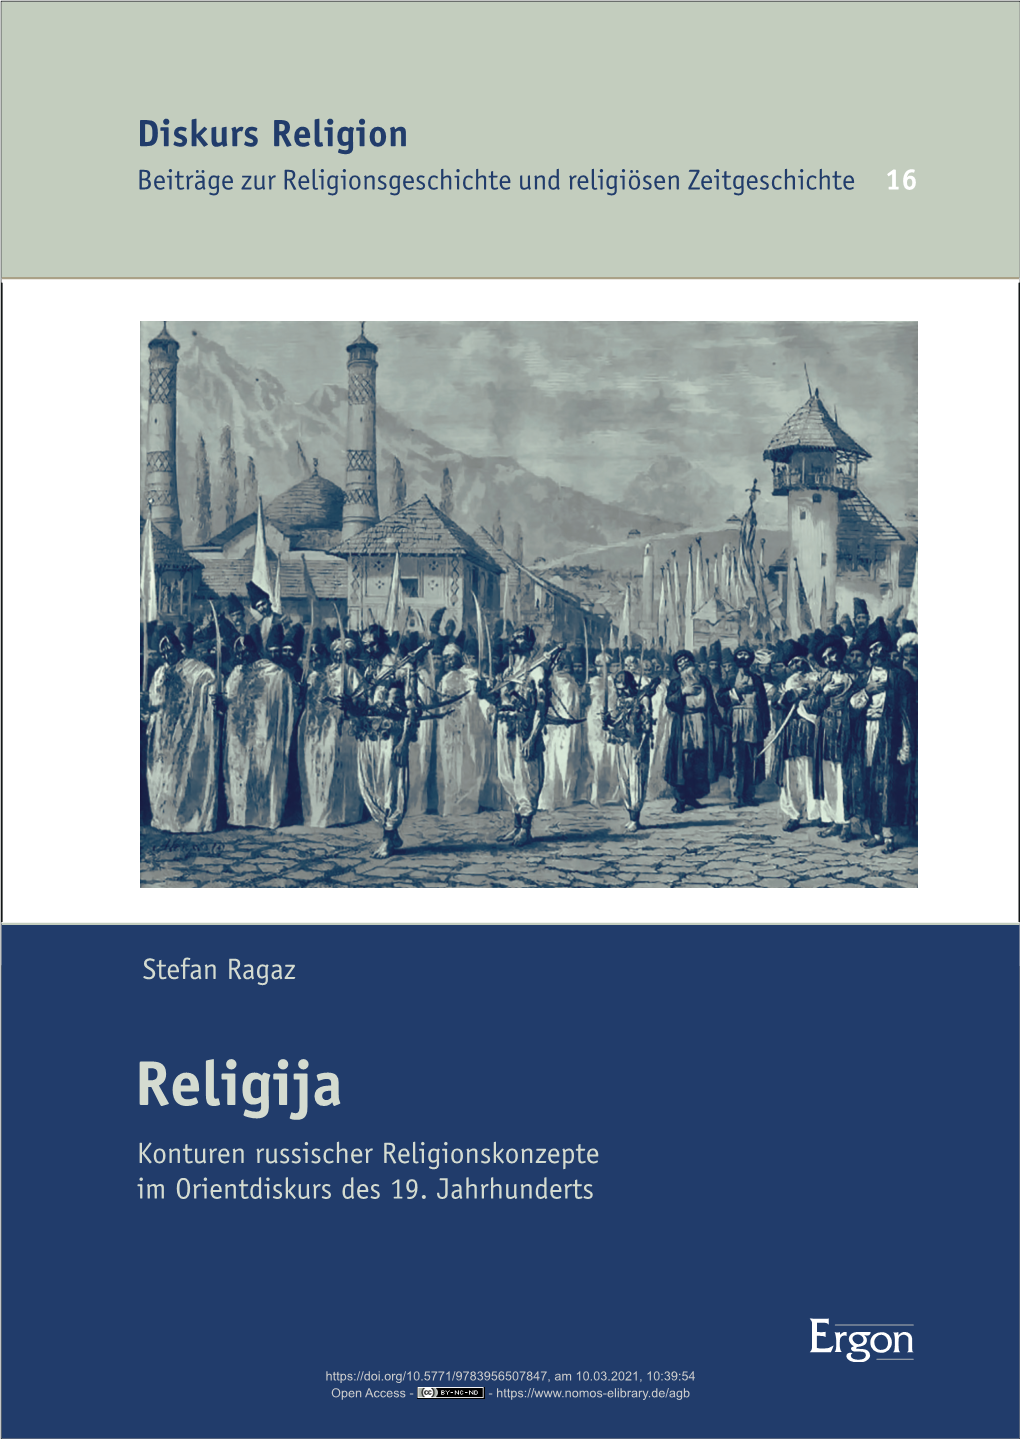 Diskurs Religion 16 Beiträge Zur Religionsgeschichte Und Religiösen Zeit Ge Schichte 16 Religija